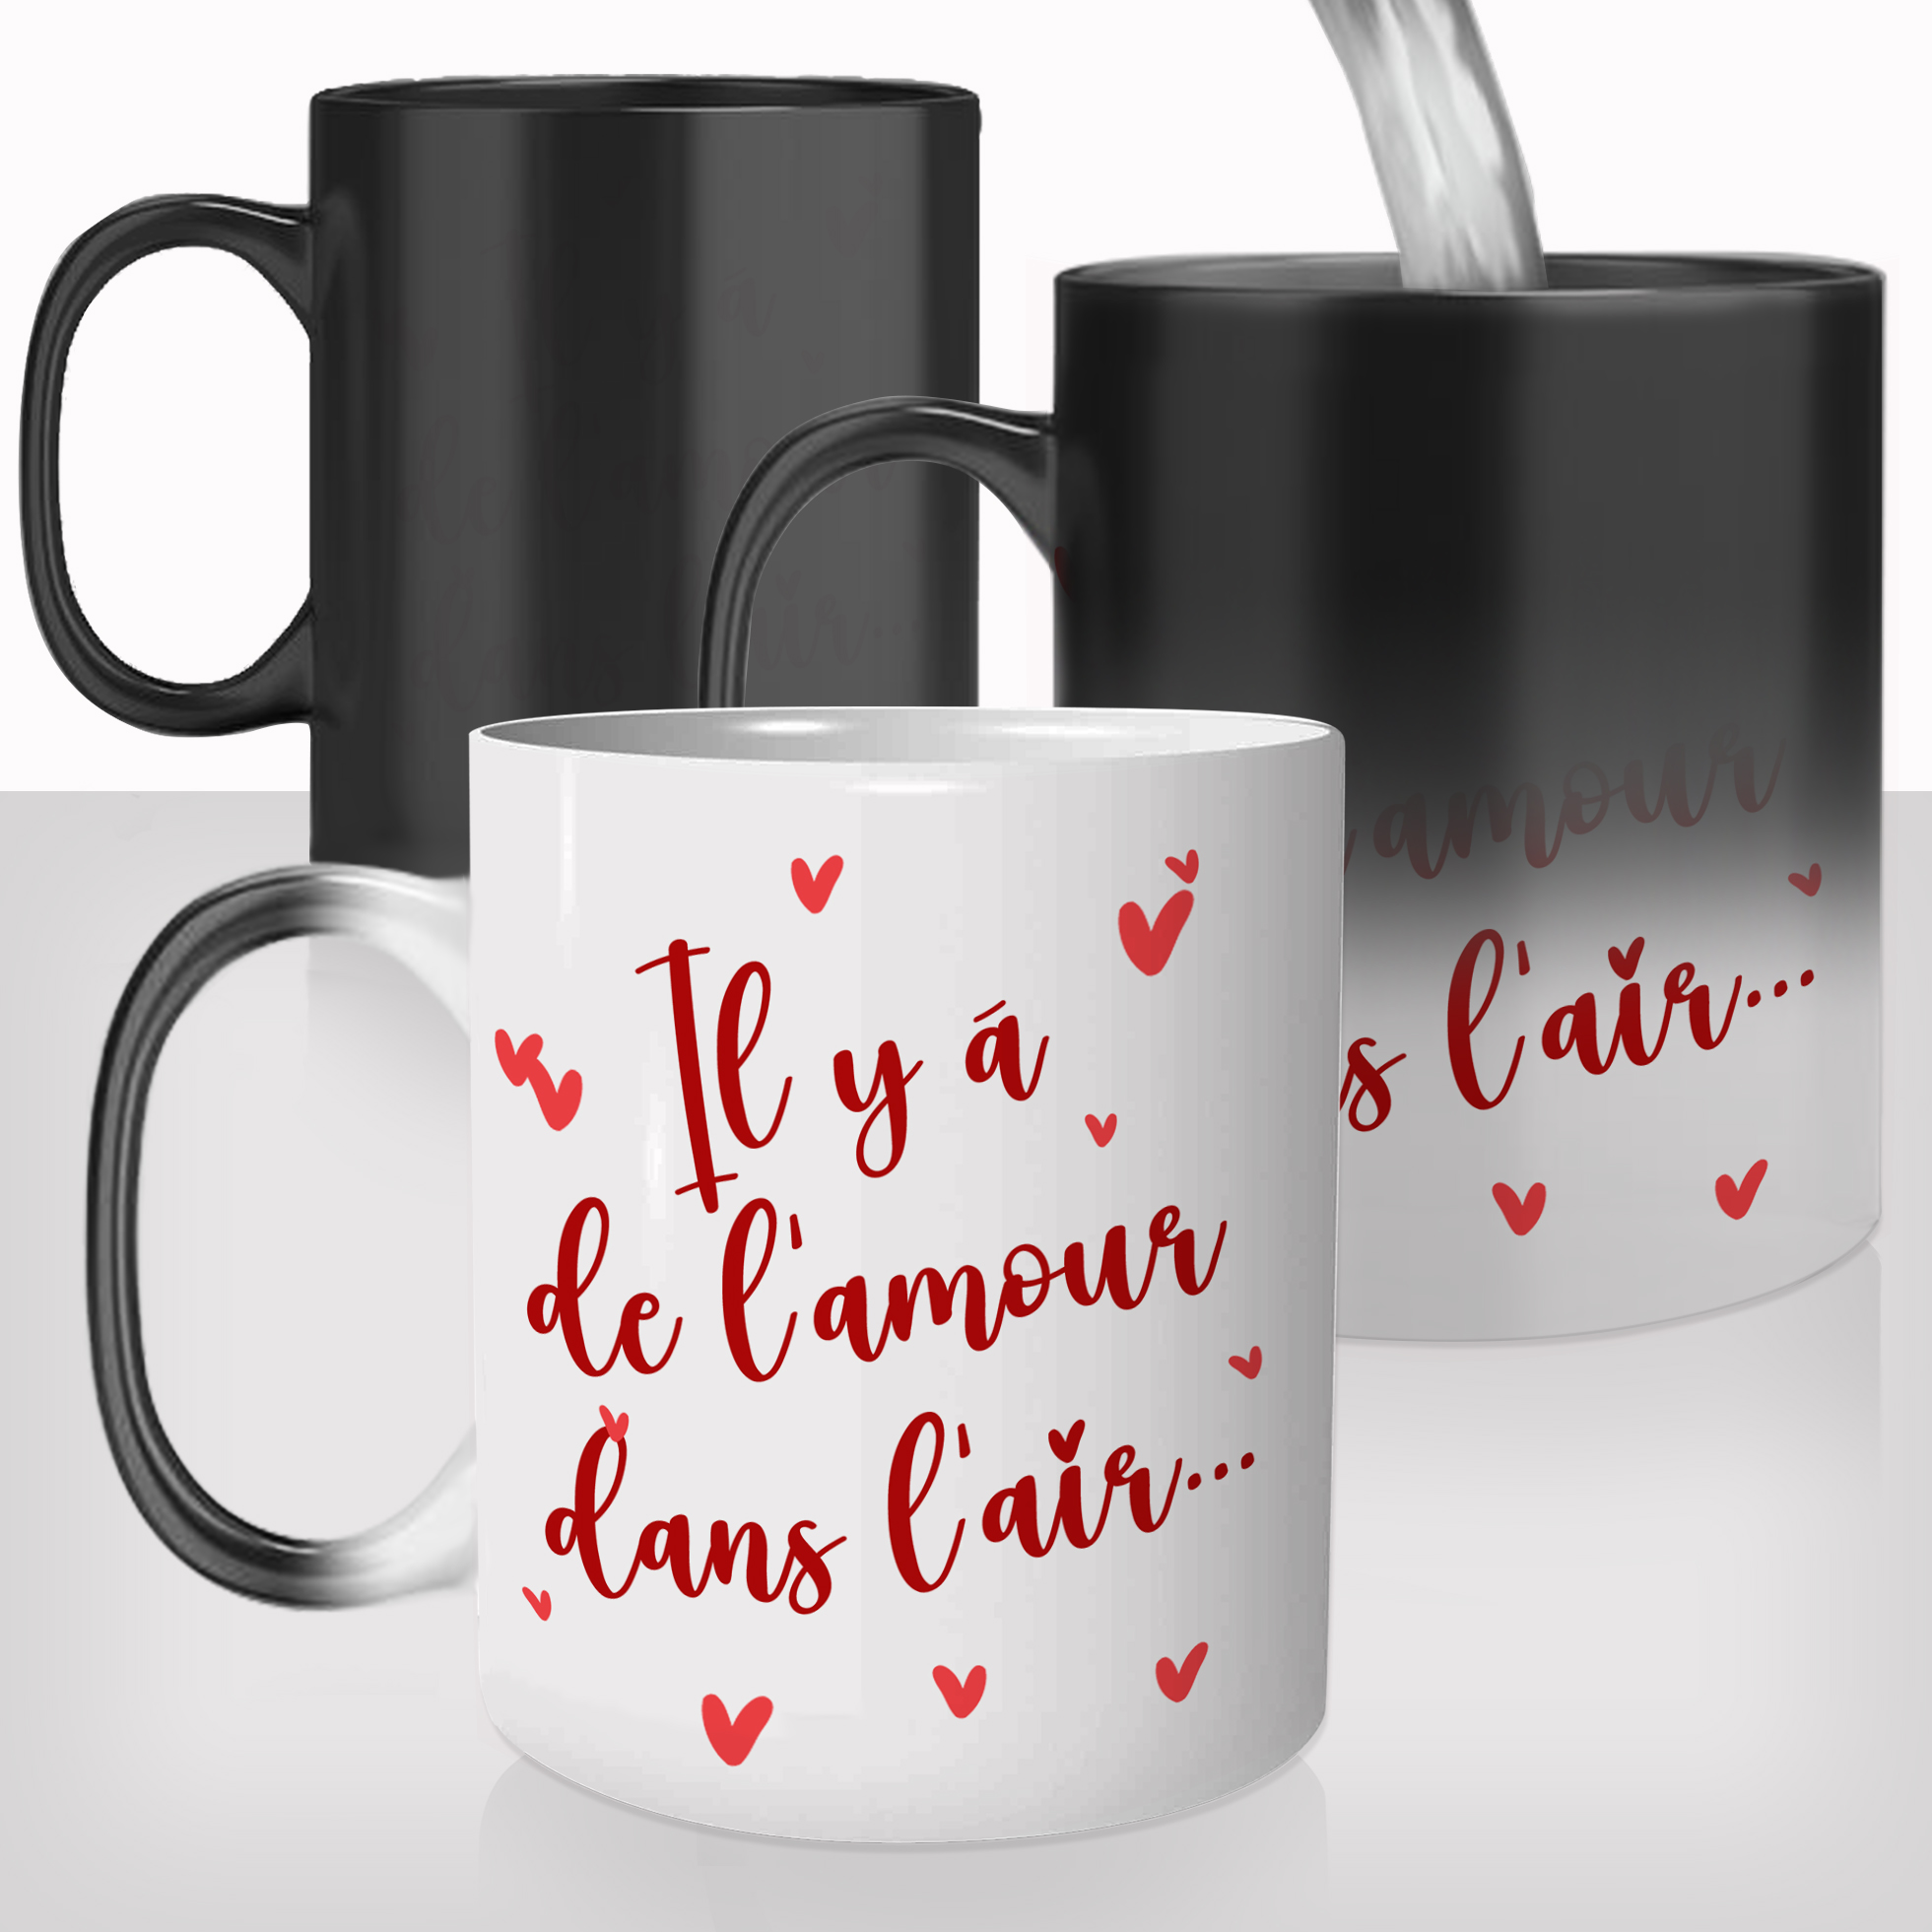 mug-magique-personnalisable-thermoreactif-tasse-thermique-de-lamour-dans-lair-saint-valentin-photo-prénoms-couple-fun-idée-cadeau-amour2